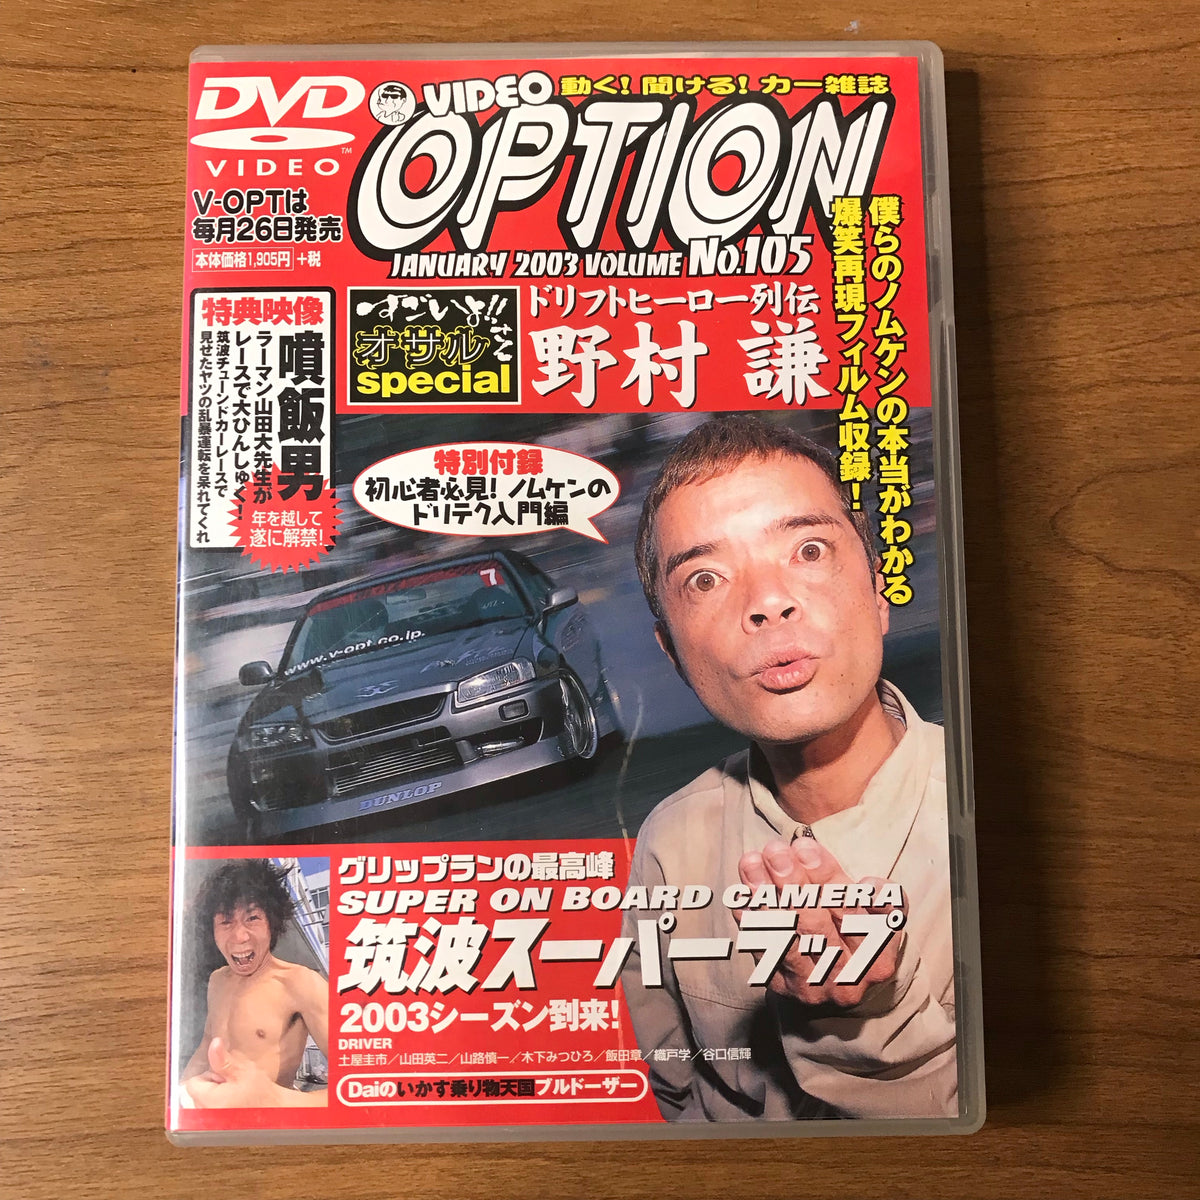 Option Video Vol 105 DVD – The Parts Stache